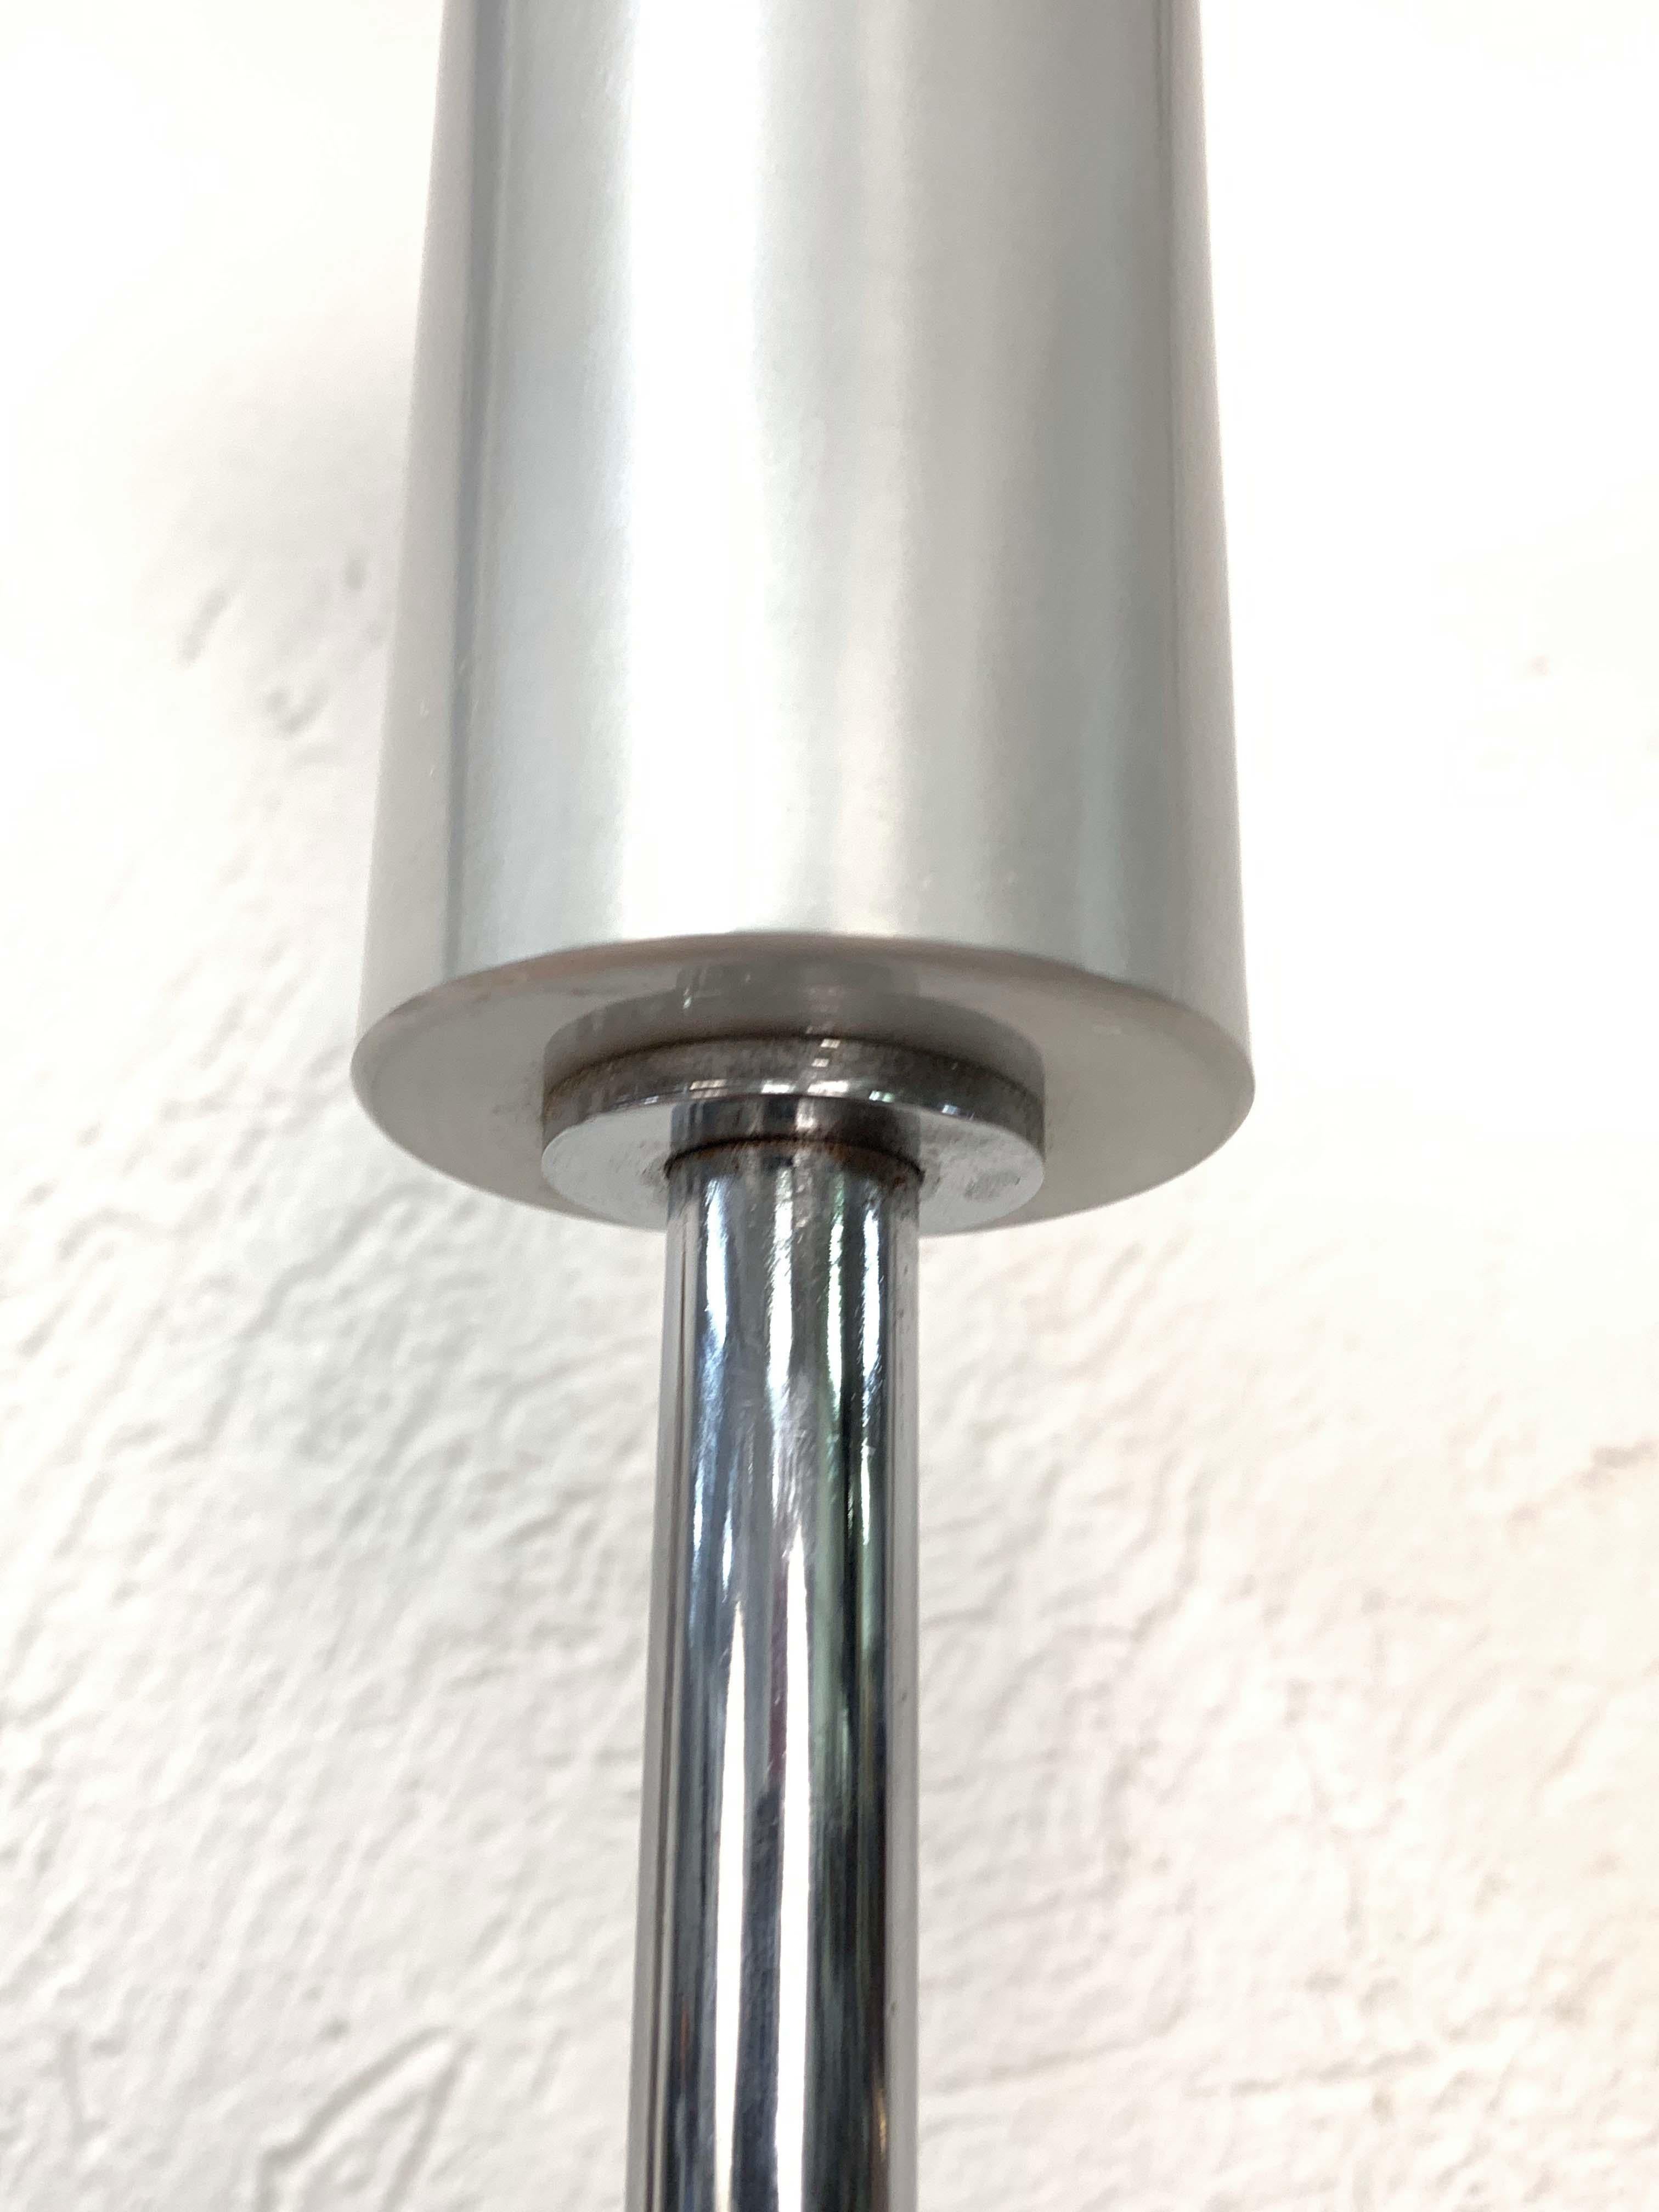 Midcentury Gino Sarfatti Aluminum Chrome Italian 1073 Floor Lamp, Arteluce 1950s 2